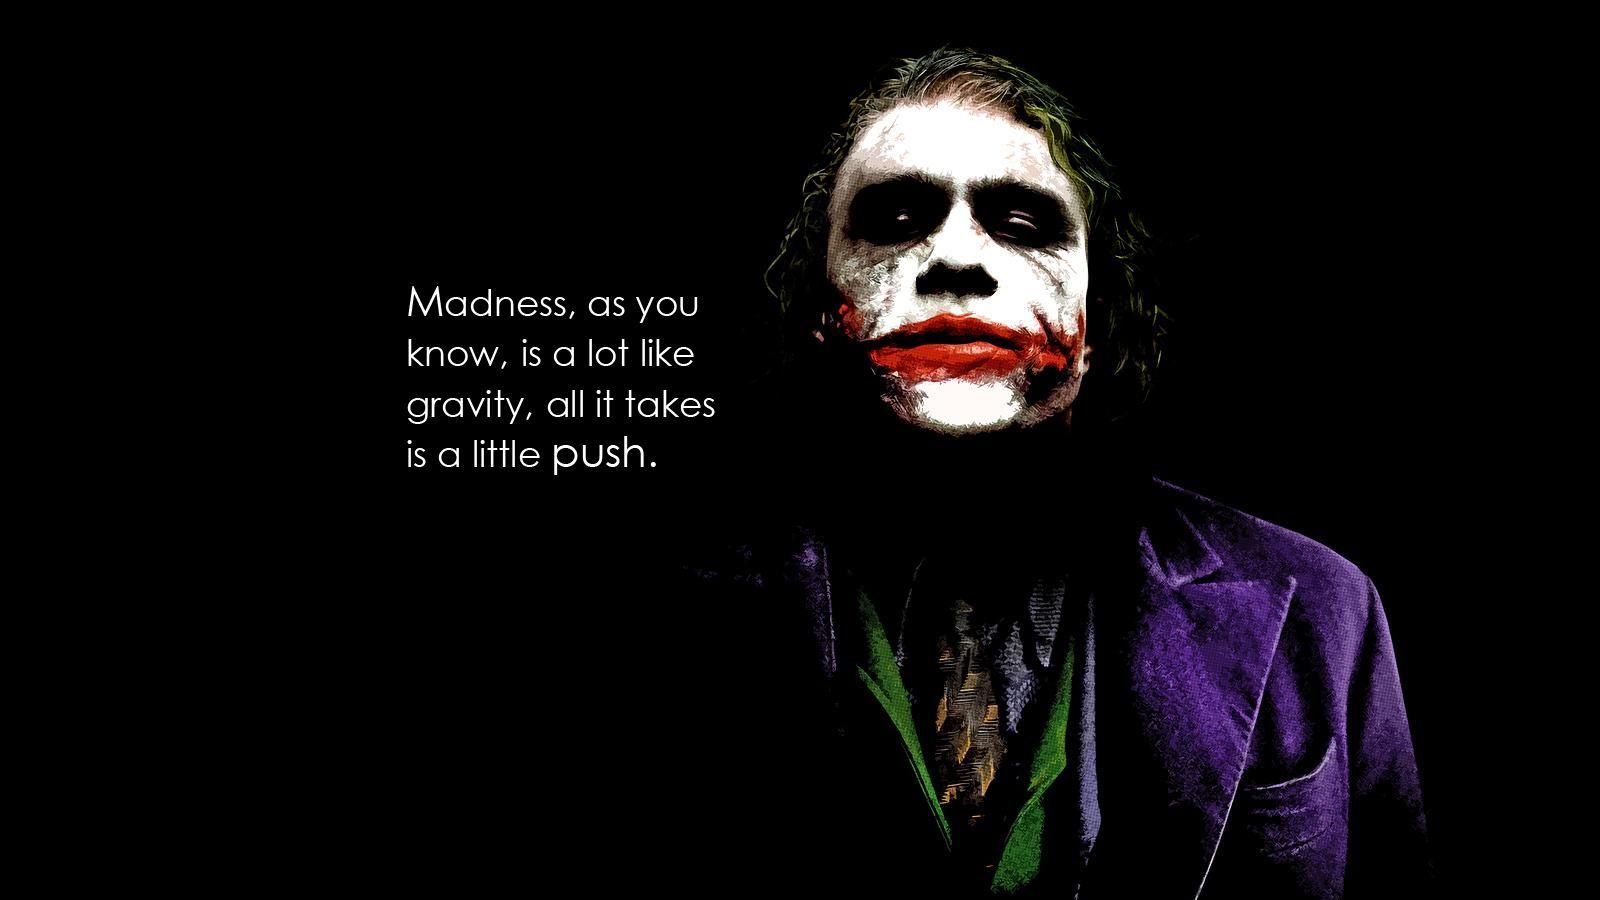 Batman And Joker Wallpaper. Joker quotes, Joker wallpaper, Dark knight quotes